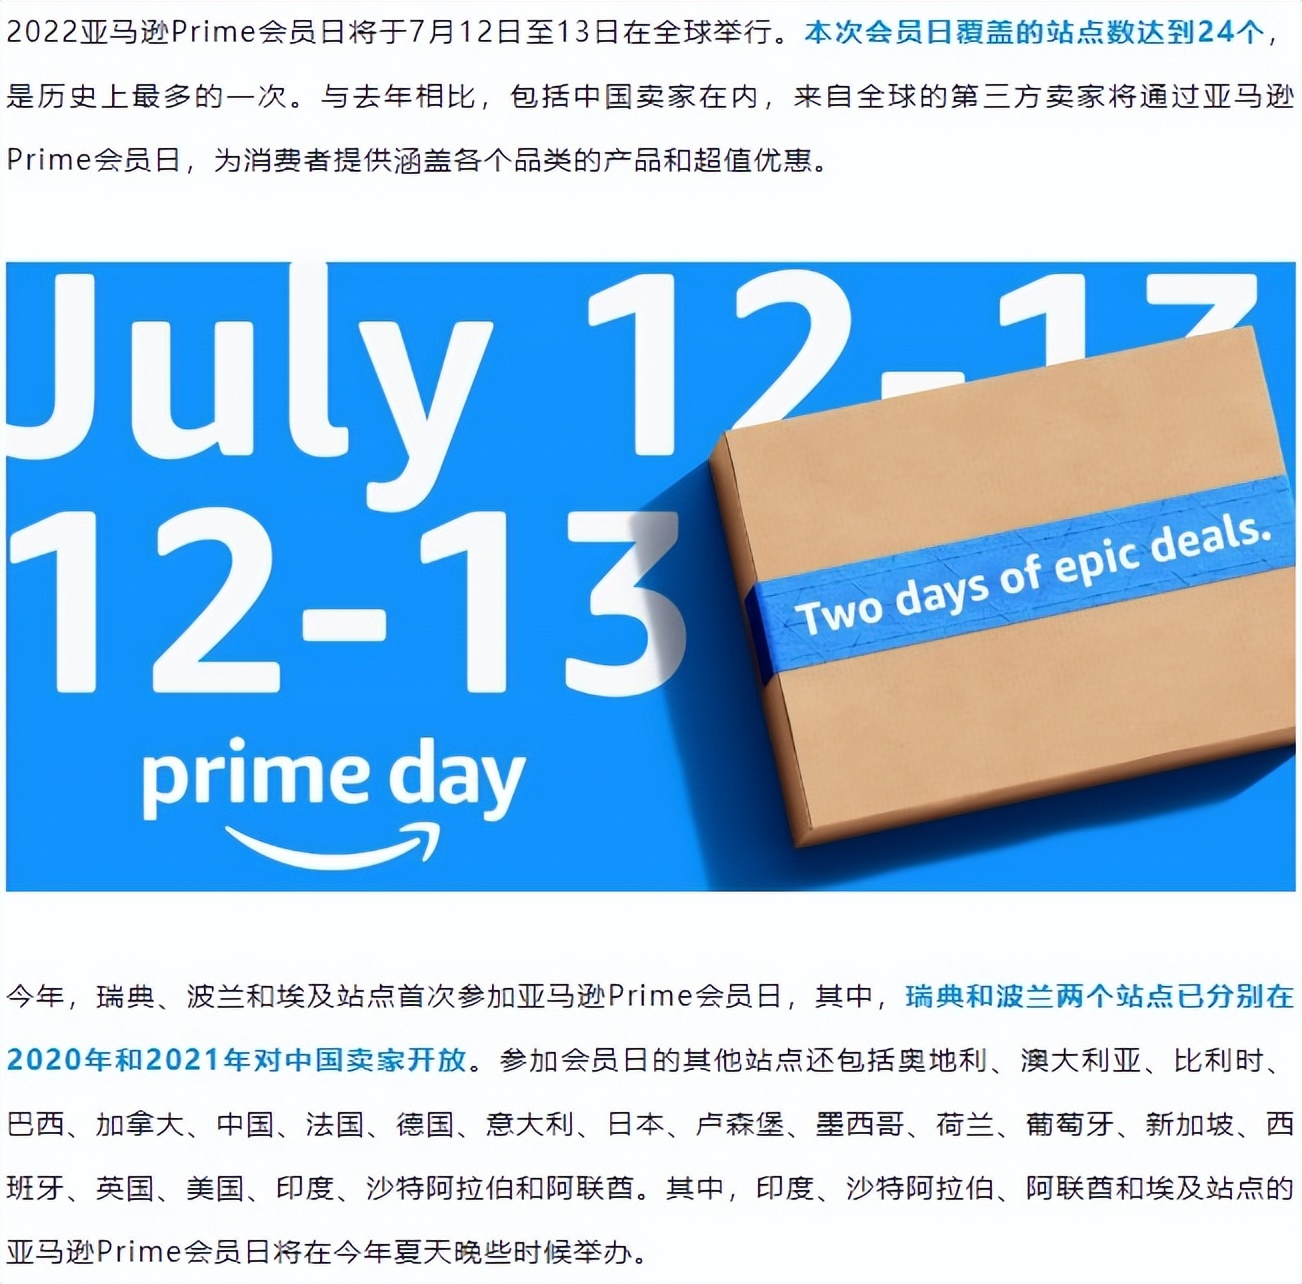 亚马逊Prime Day开始时间在7月12-13日